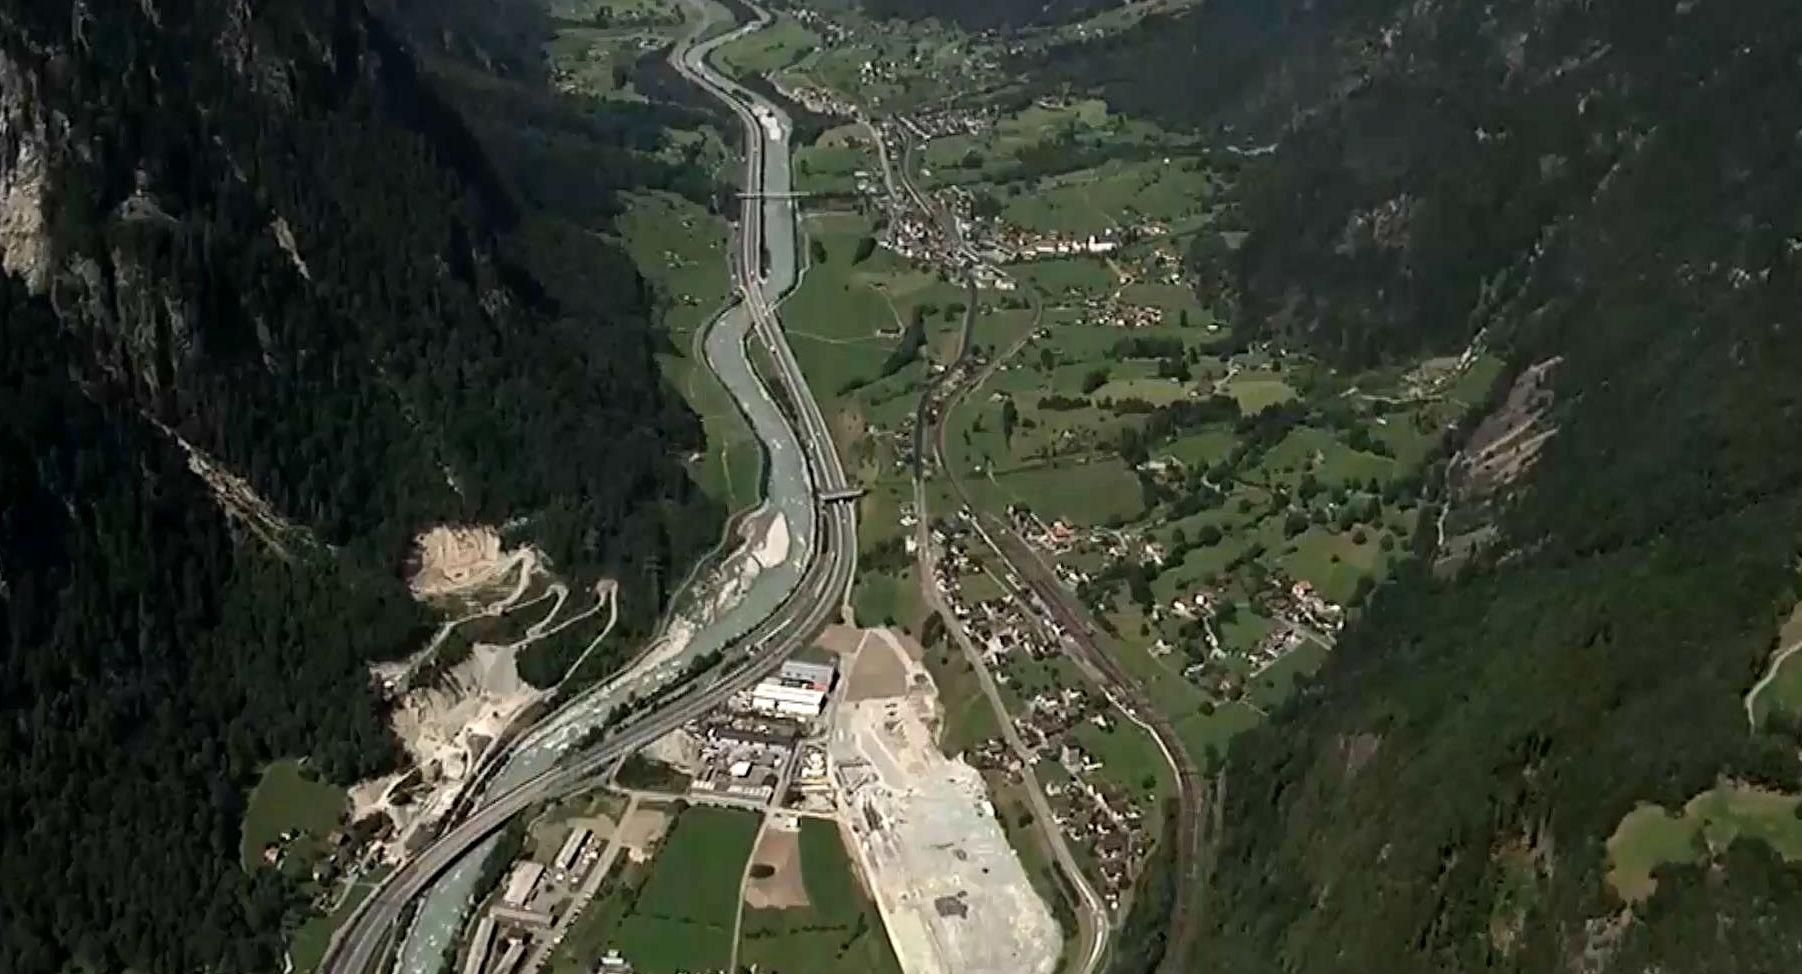  17 років будівництва: у Швейцарії відкриють залізничний тунель-рекордсмен